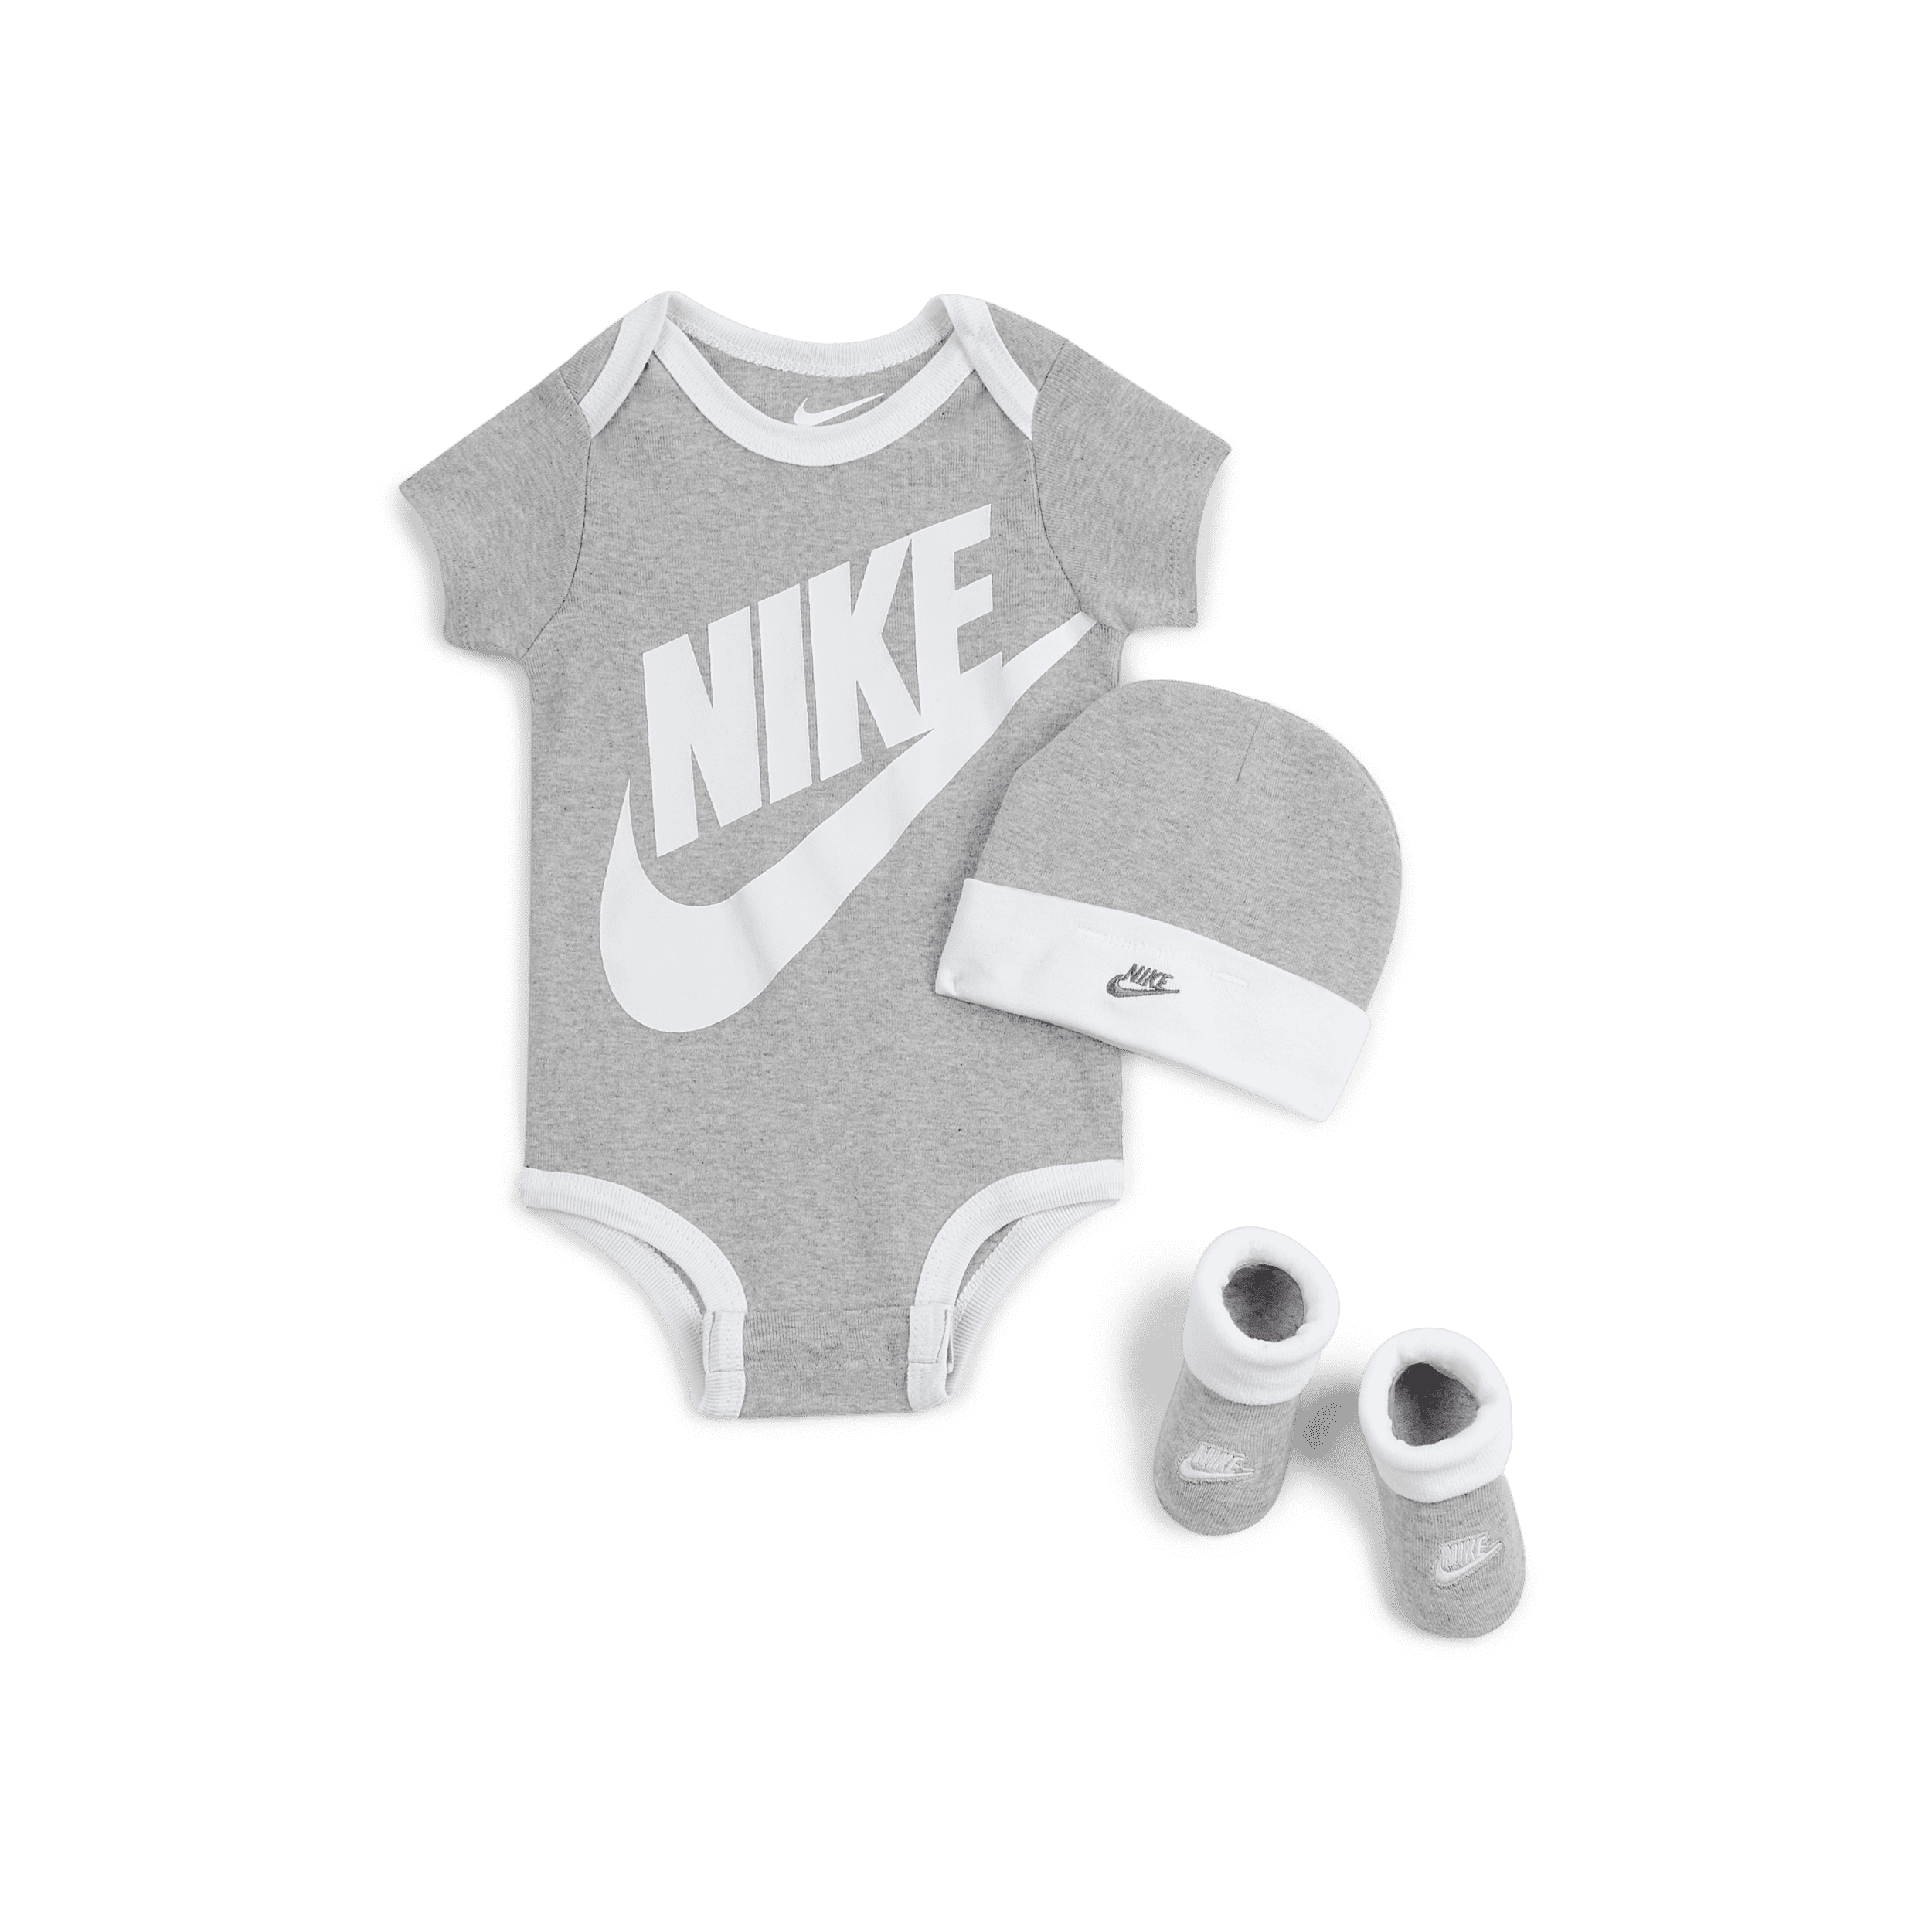 Completo in 3 pezzi Nike - Bebè (0-6 mesi) - Grigio